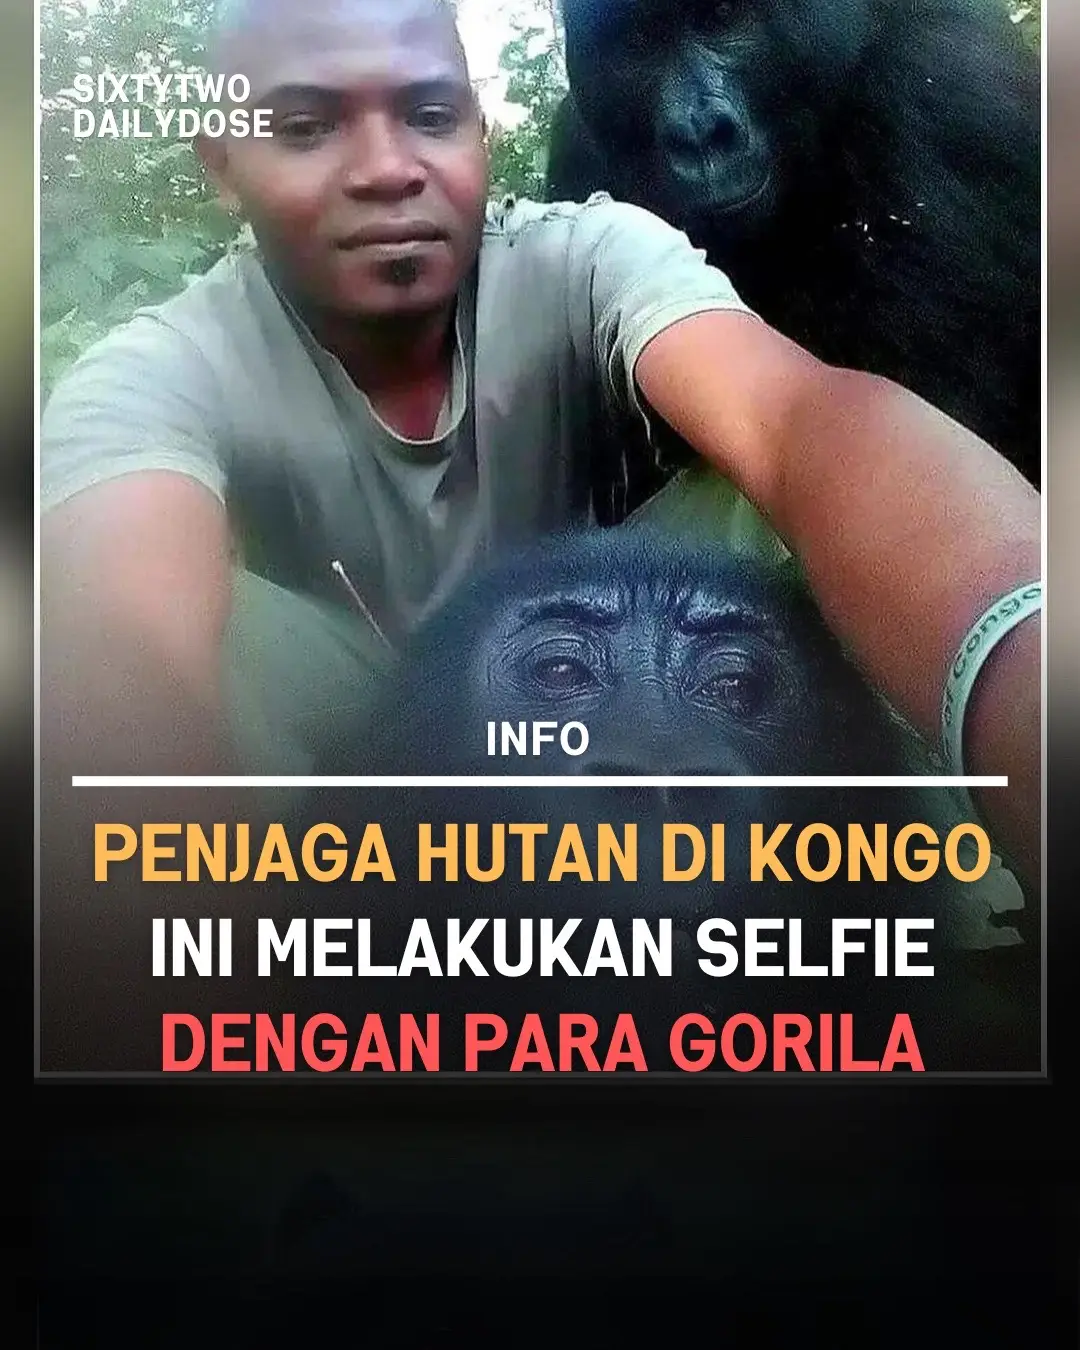 Penjaga hutan anti-perburuan dari Taman Nasional Virunga Kongo ini viral karena melakukan selfie dengan para Gorila Sementara foto-foto itu mungkin menggambarkan keakraban dan “kantor” yang santai, penjaga hutan ini menghadapi bahaya sehari-hari saat mereka melindungi satwa liar taman, termasuk gorila gunung yang terancam punah, dari pemburu liar. #62dailydose #selfie #gorila #kongo #penjagahutan 